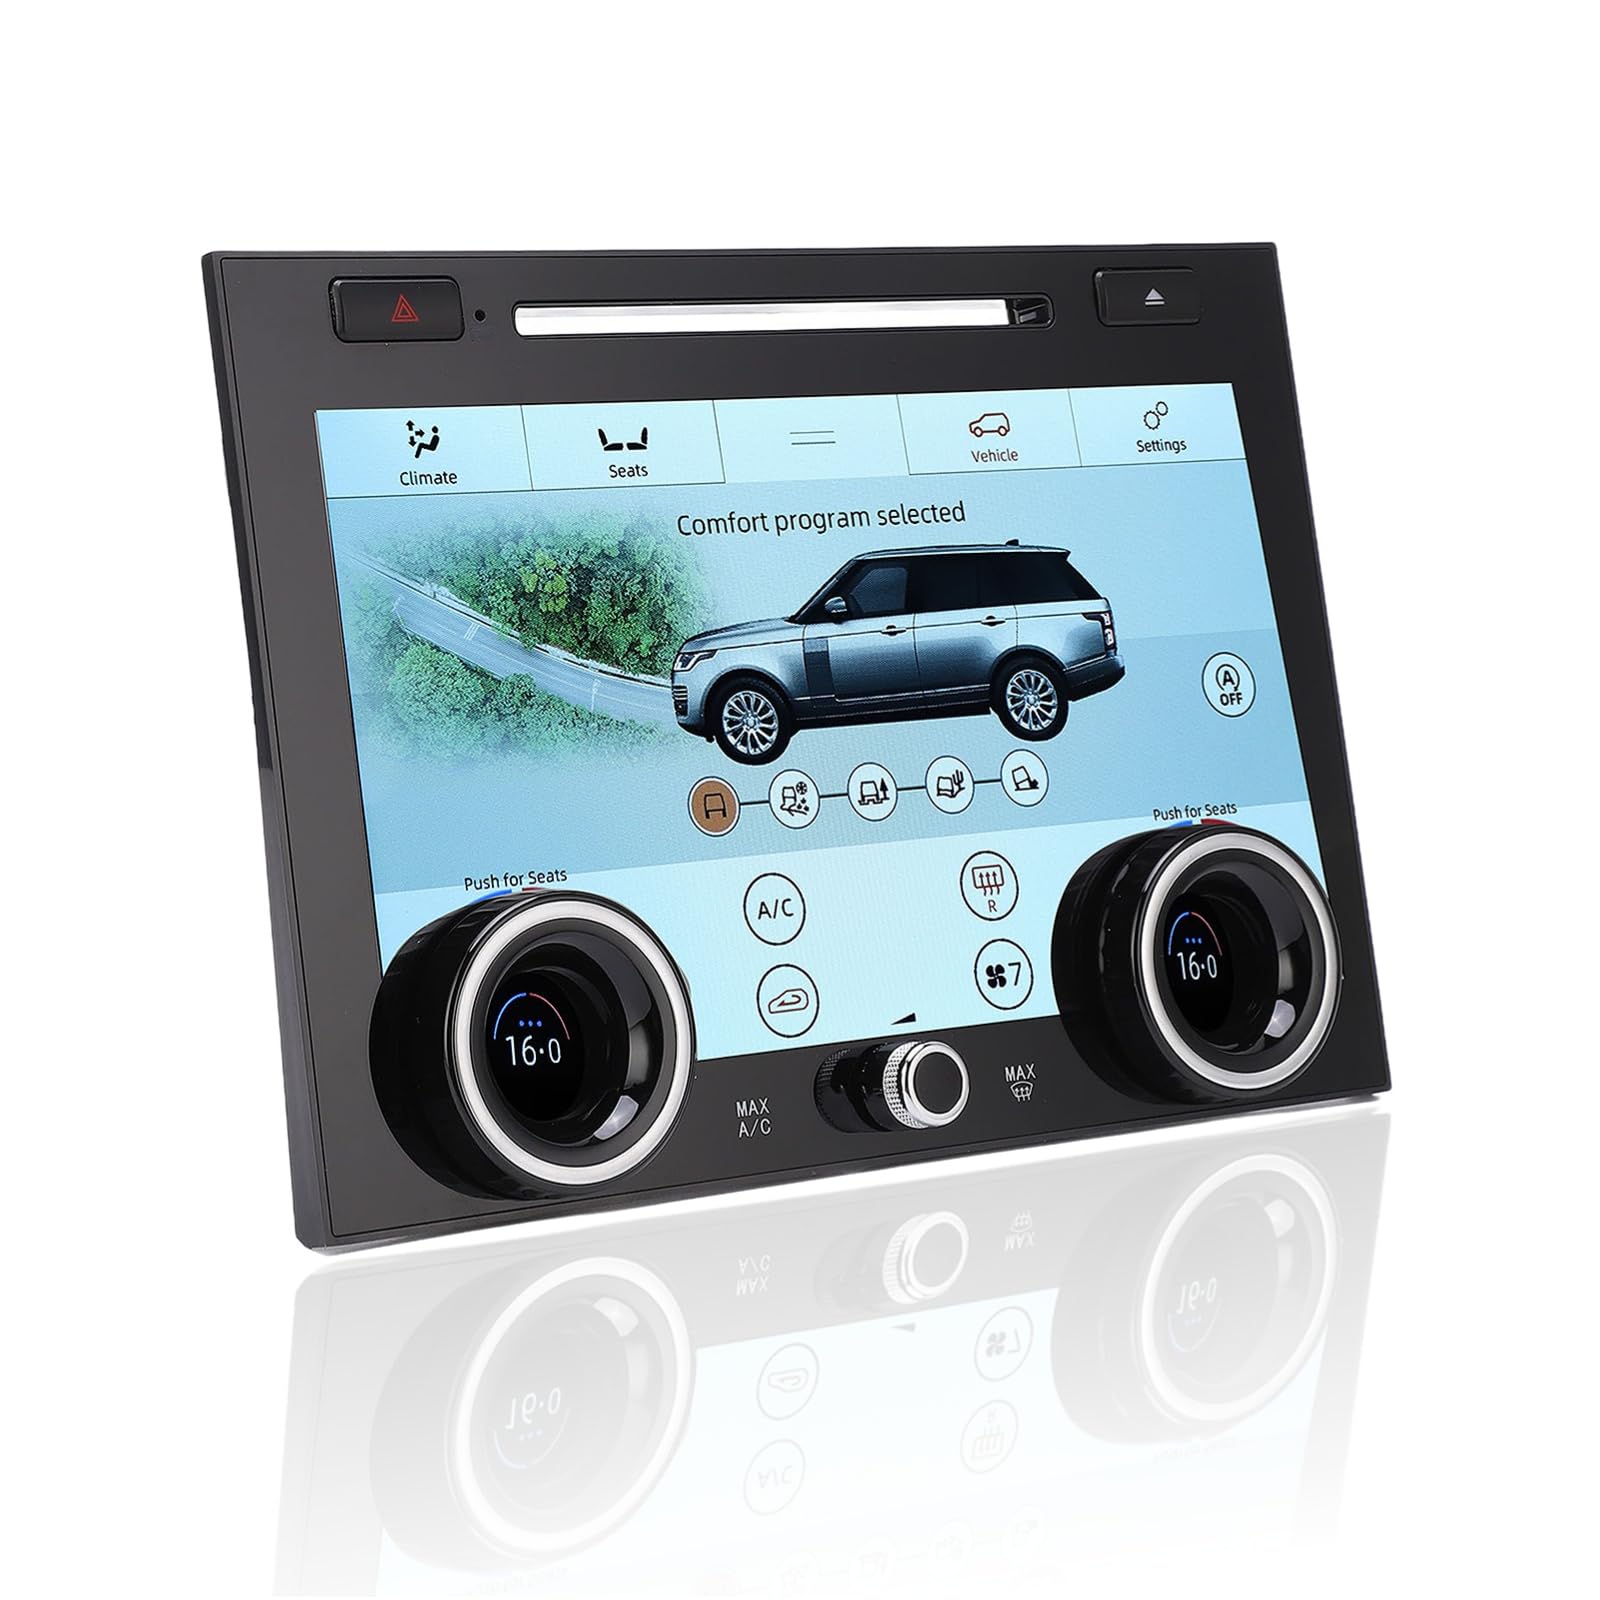 Cuifati AC-Panel für Land Rover Range Rover L405 2013 Bis 2017, 10-Zoll-Klimasteuerungsplatine für Autoklimaanlagen, 1080p-LCD-AC-Touchscreen, Upgrade-Version mit Installationsanleitung von Cuifati